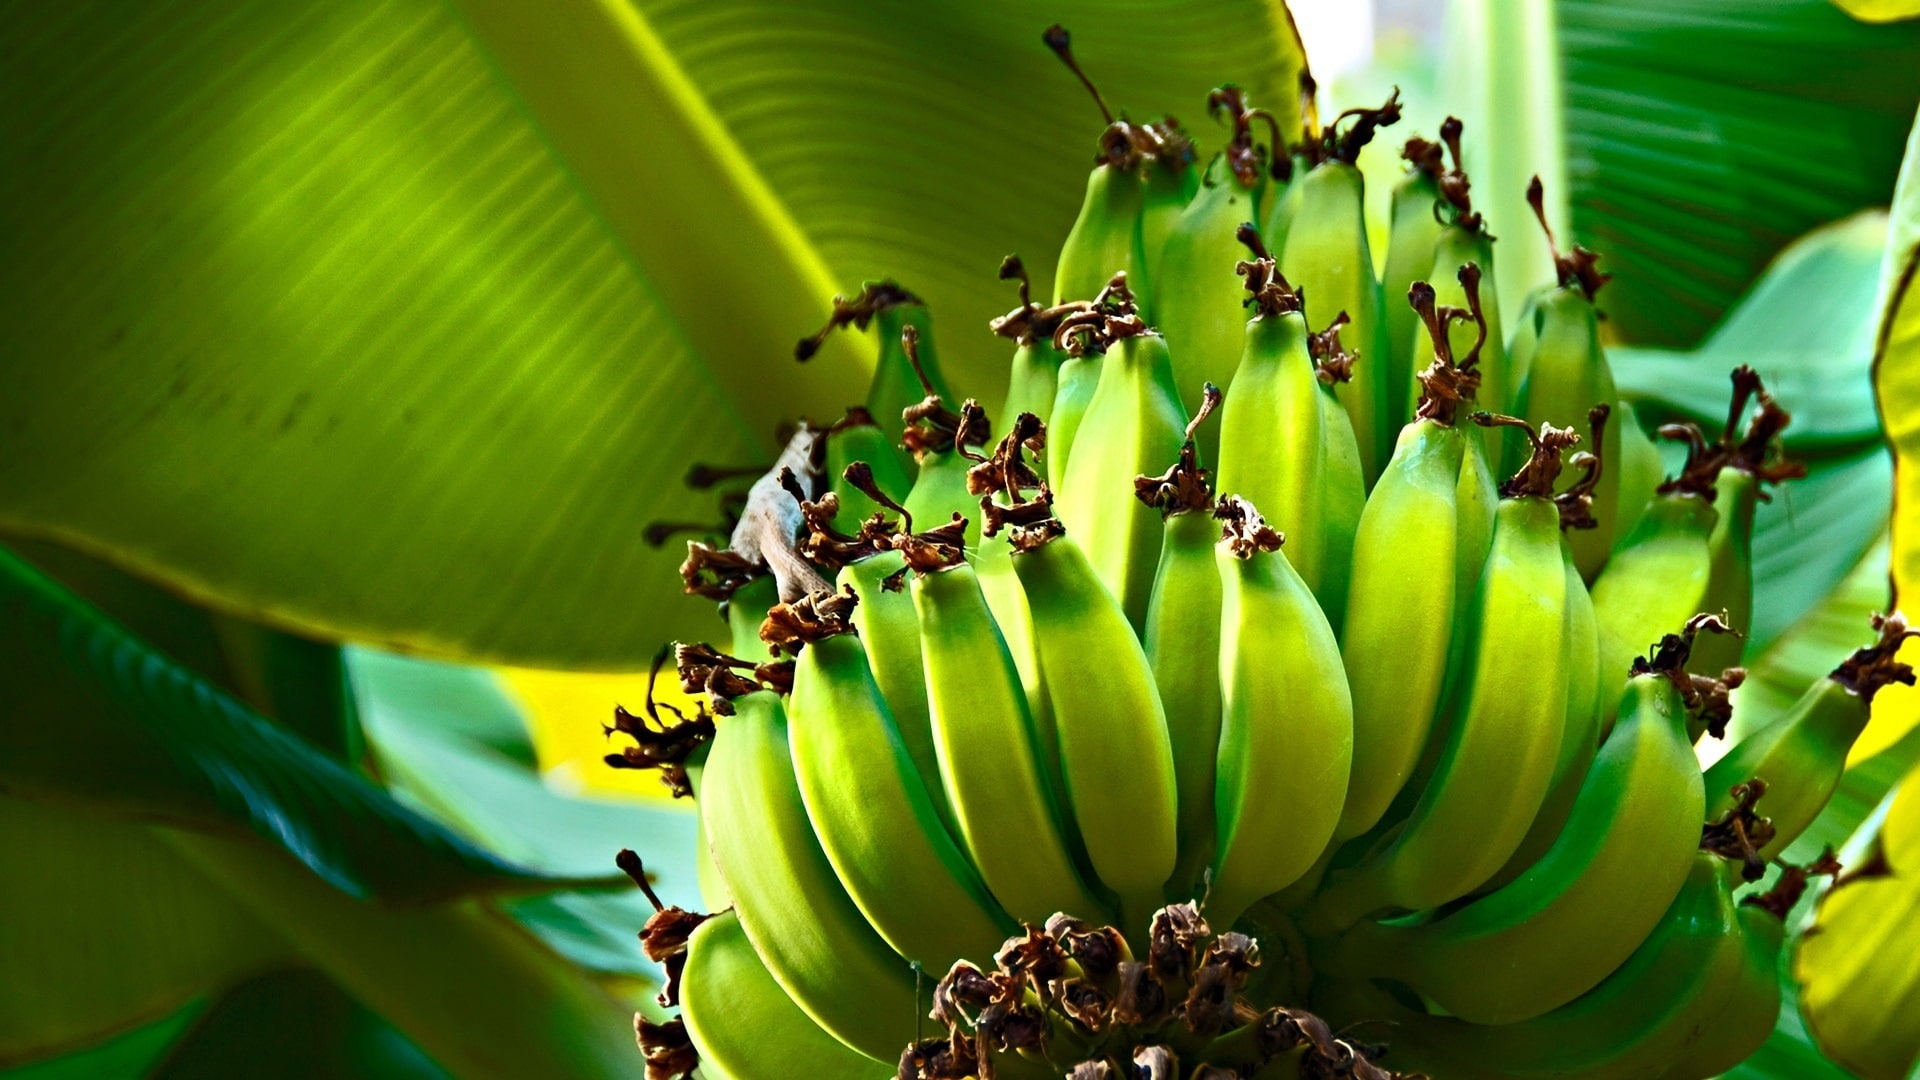 Green bananas, plantains, leaves, tree, green banana